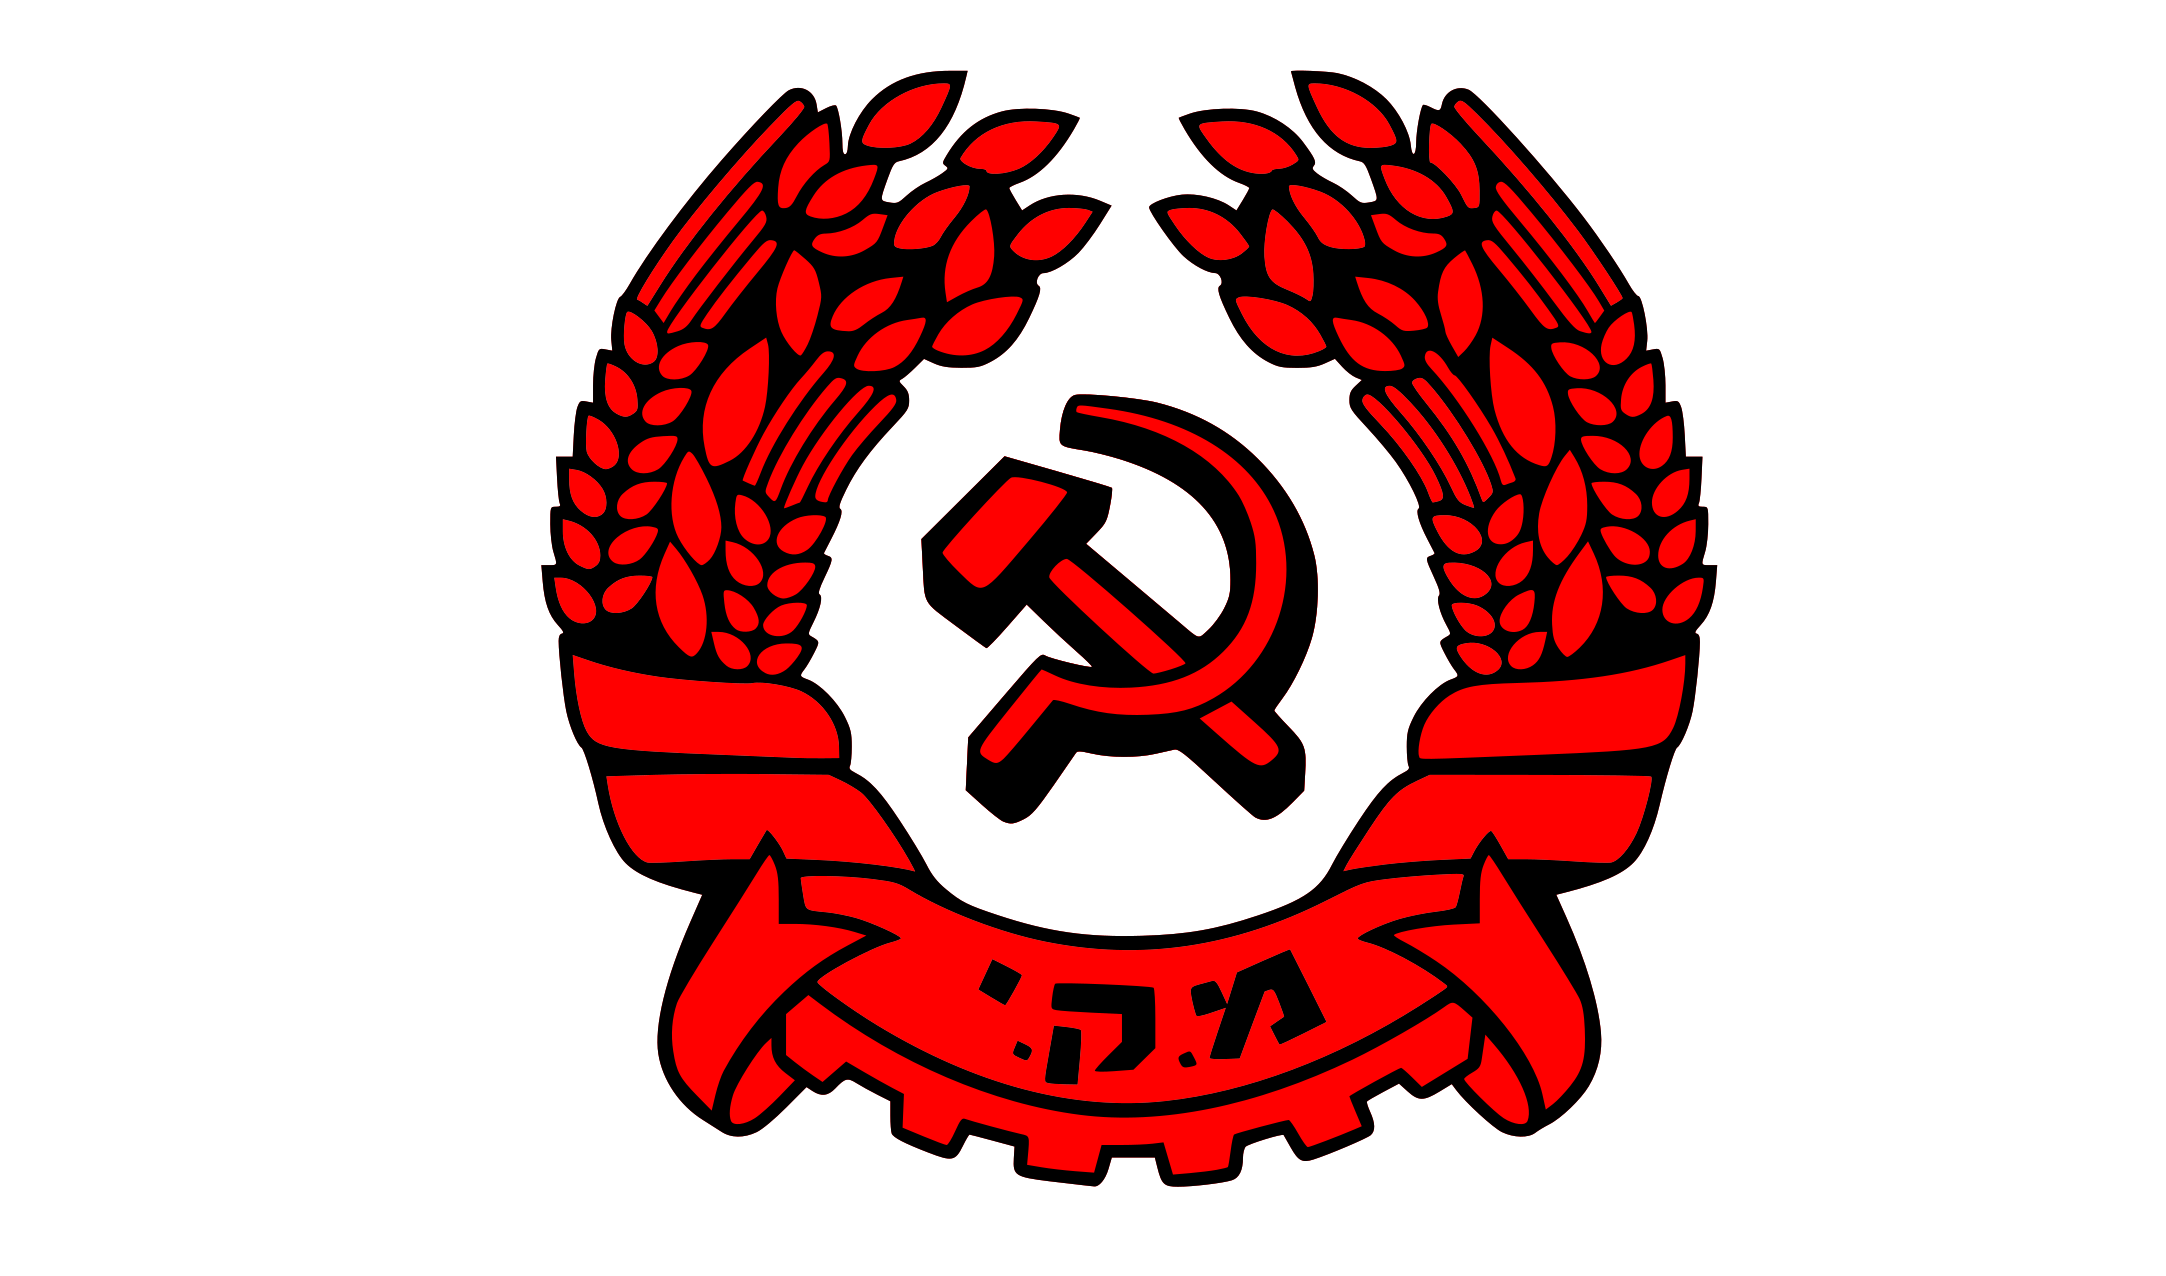 Le 28e congrès du Parti communiste israélien (MAKI) se tiendra du 7 au 9 octobre